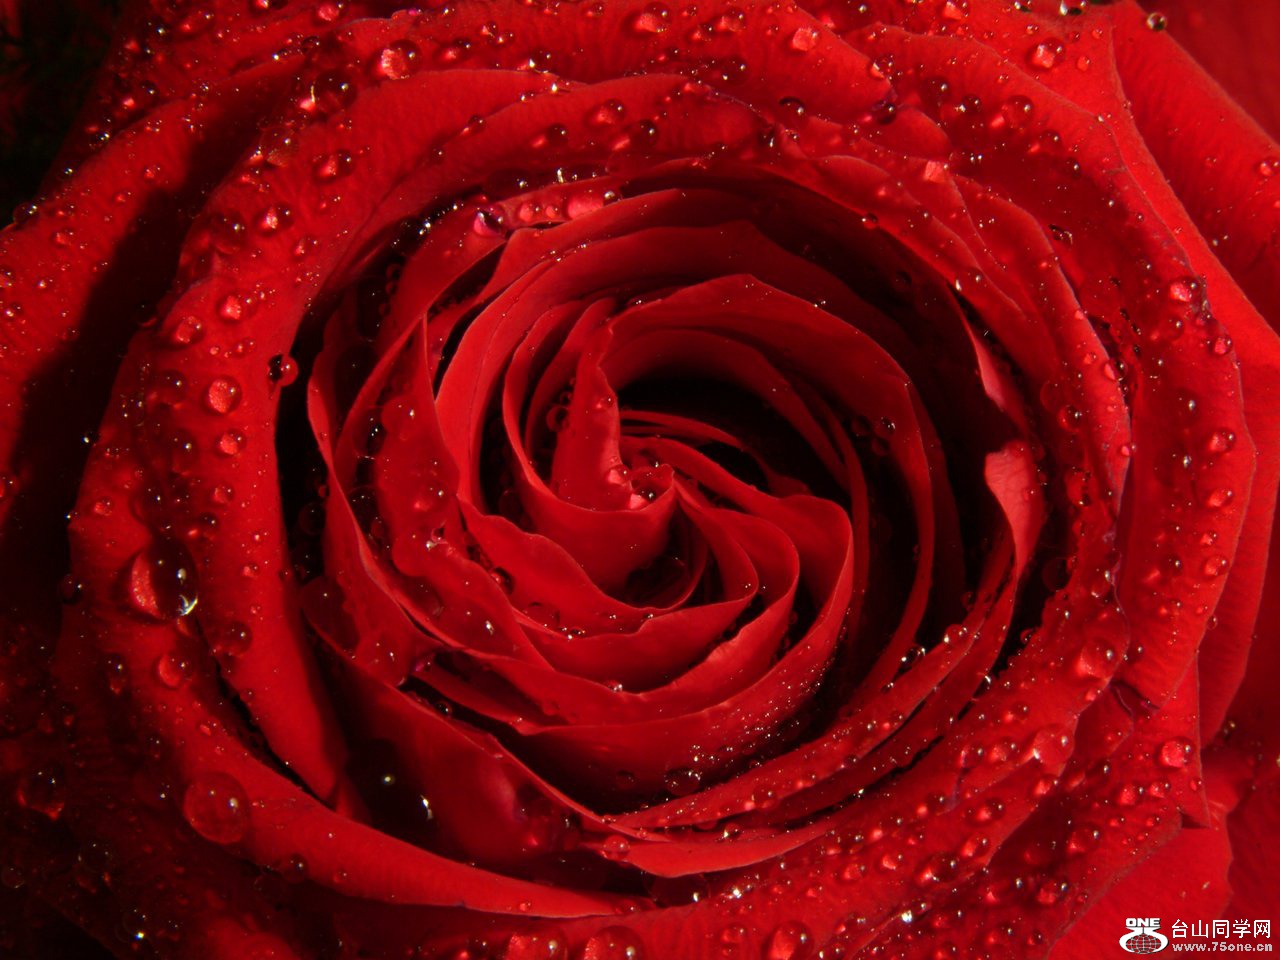 Rose Rouge2[1].jpg